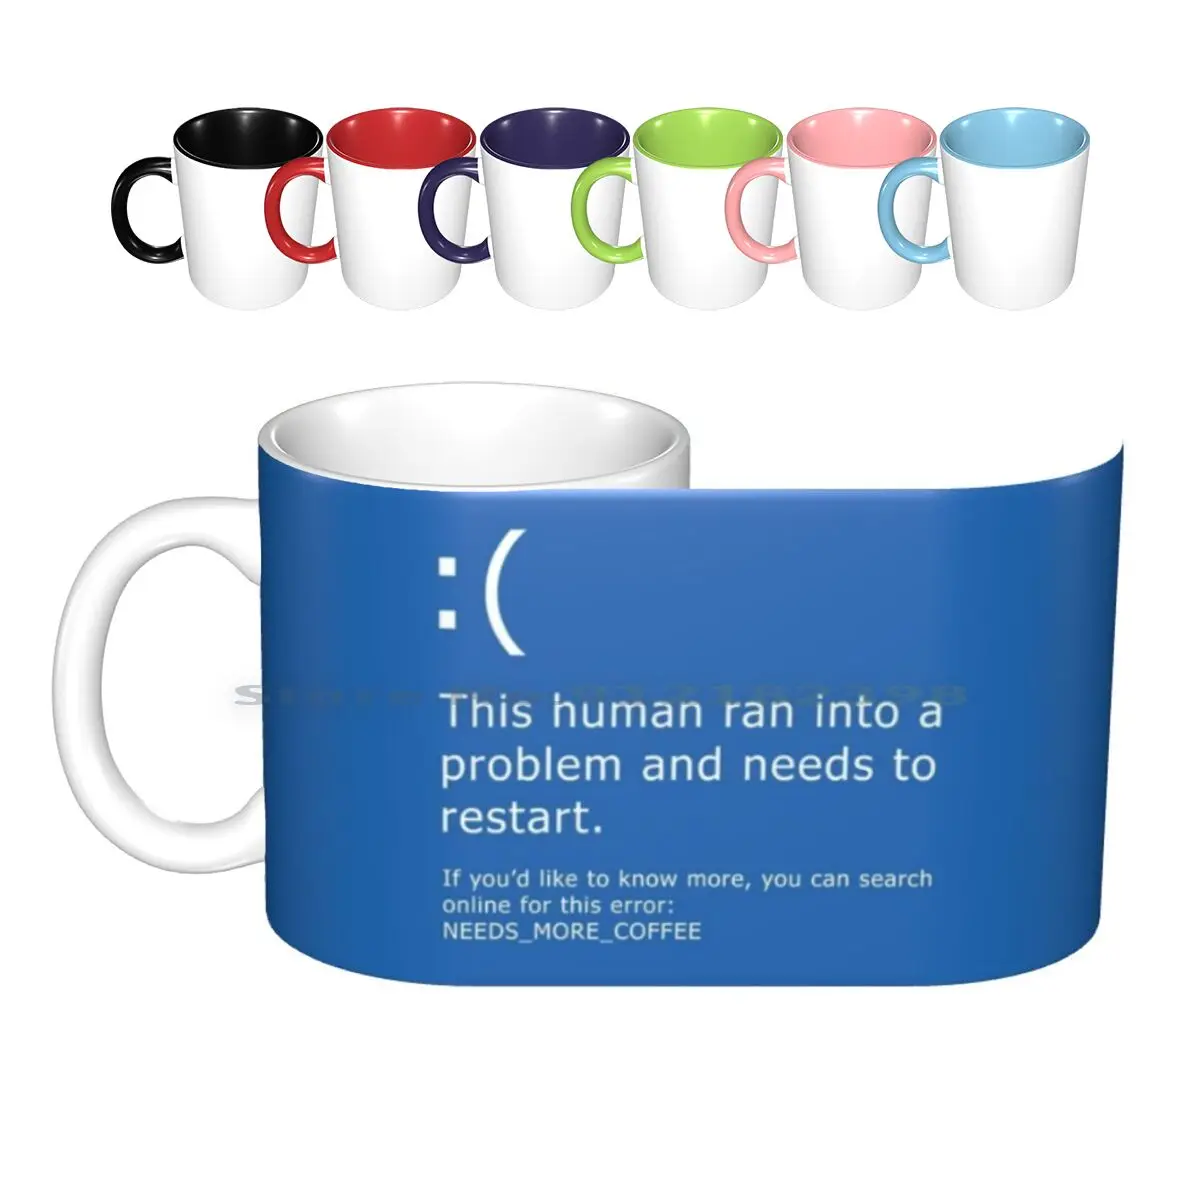 

Керамические кружки Blue Screen Of Death-Coffee Error, кофейные чашки, кружка для молока, чая, Windows, синий экран Death Bsod, ошибка кофе, ПК